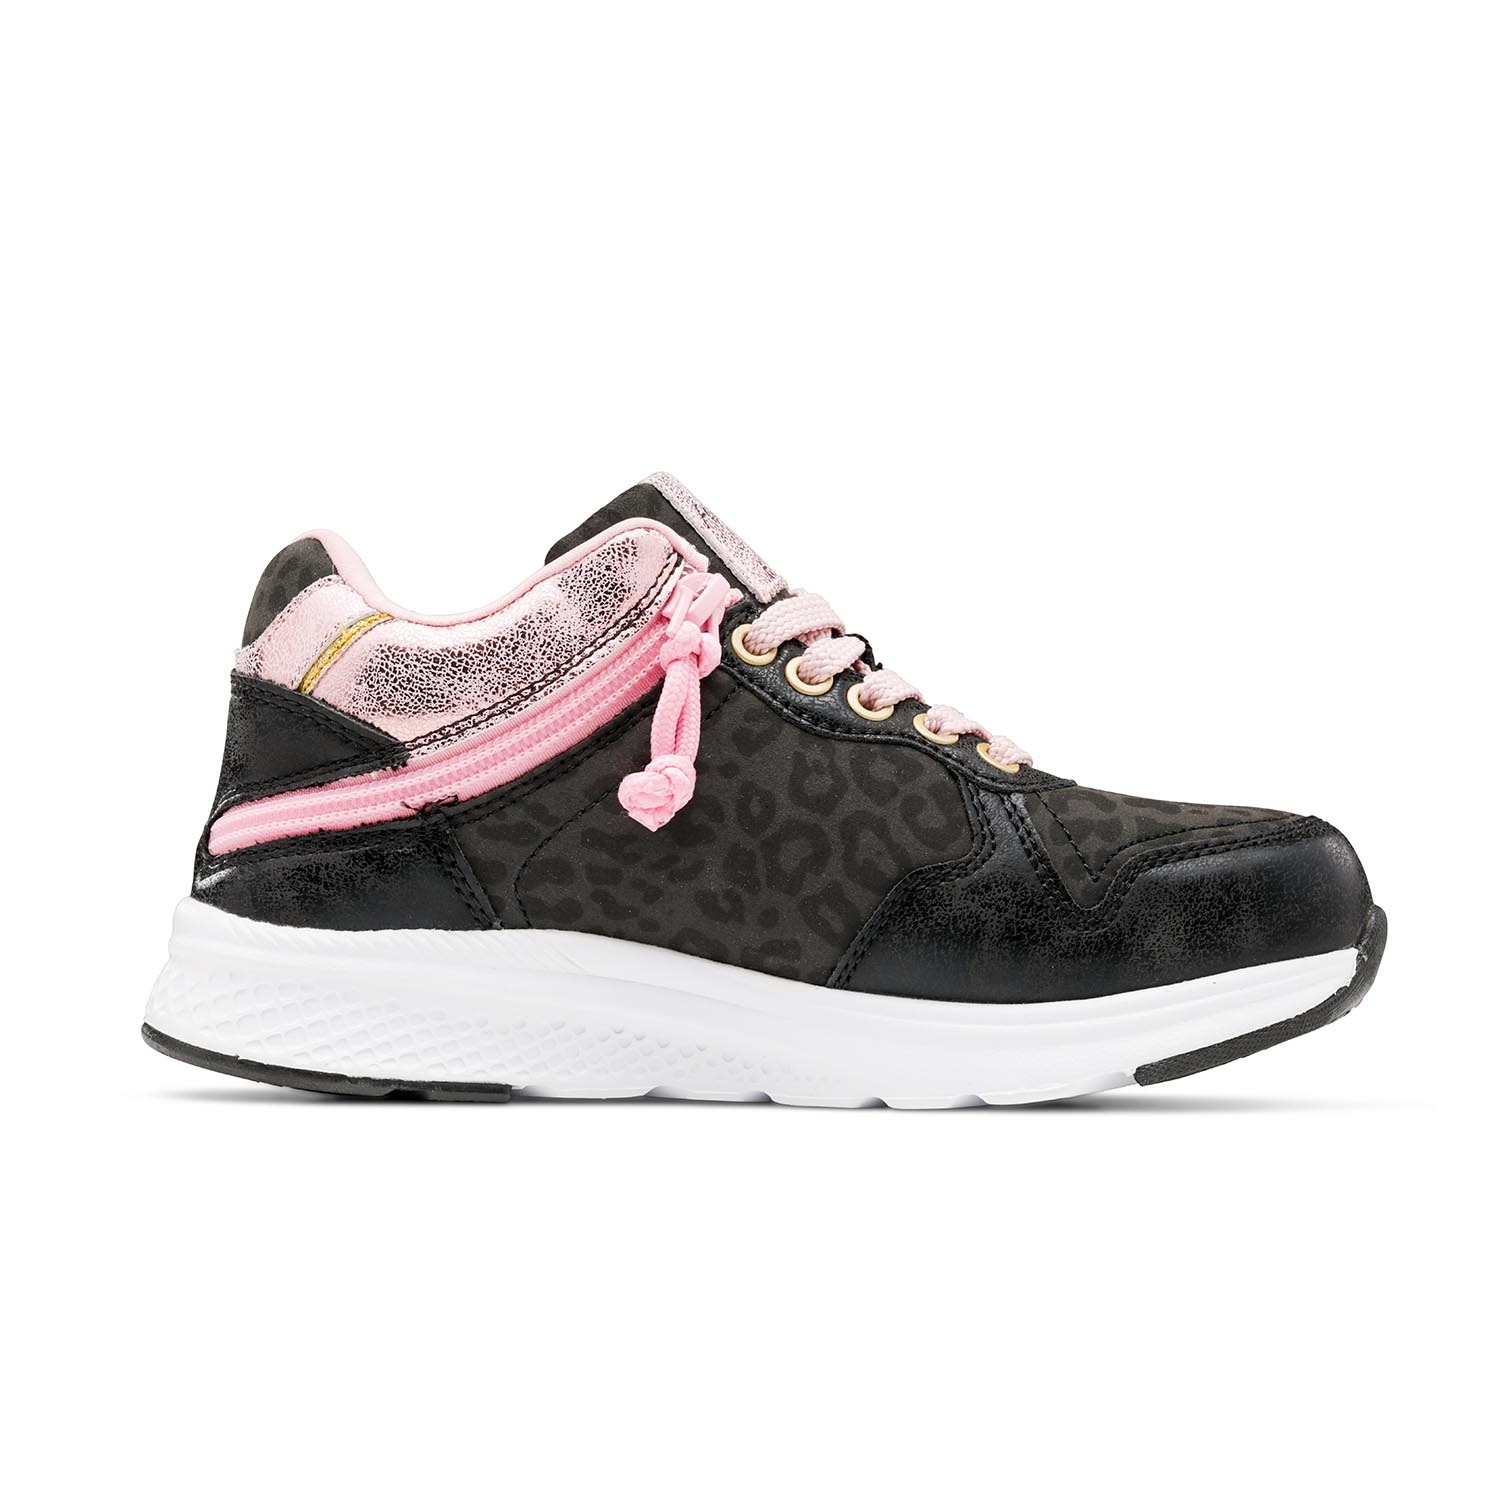 Pink Hi-Top Casual Women Sneakers - Selling Fast at Pantaloons.com